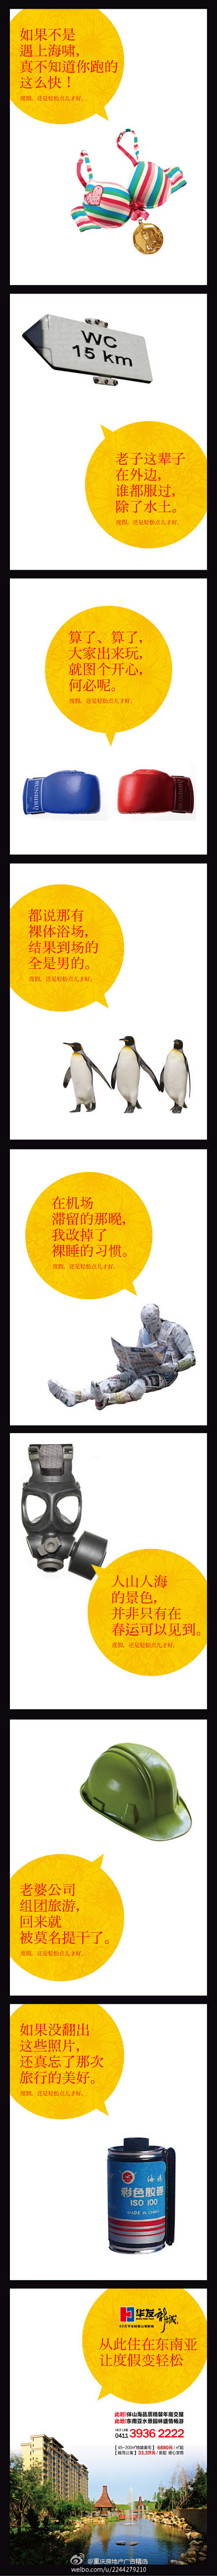 重庆房地产广告精选：#微博稿# “老子这...